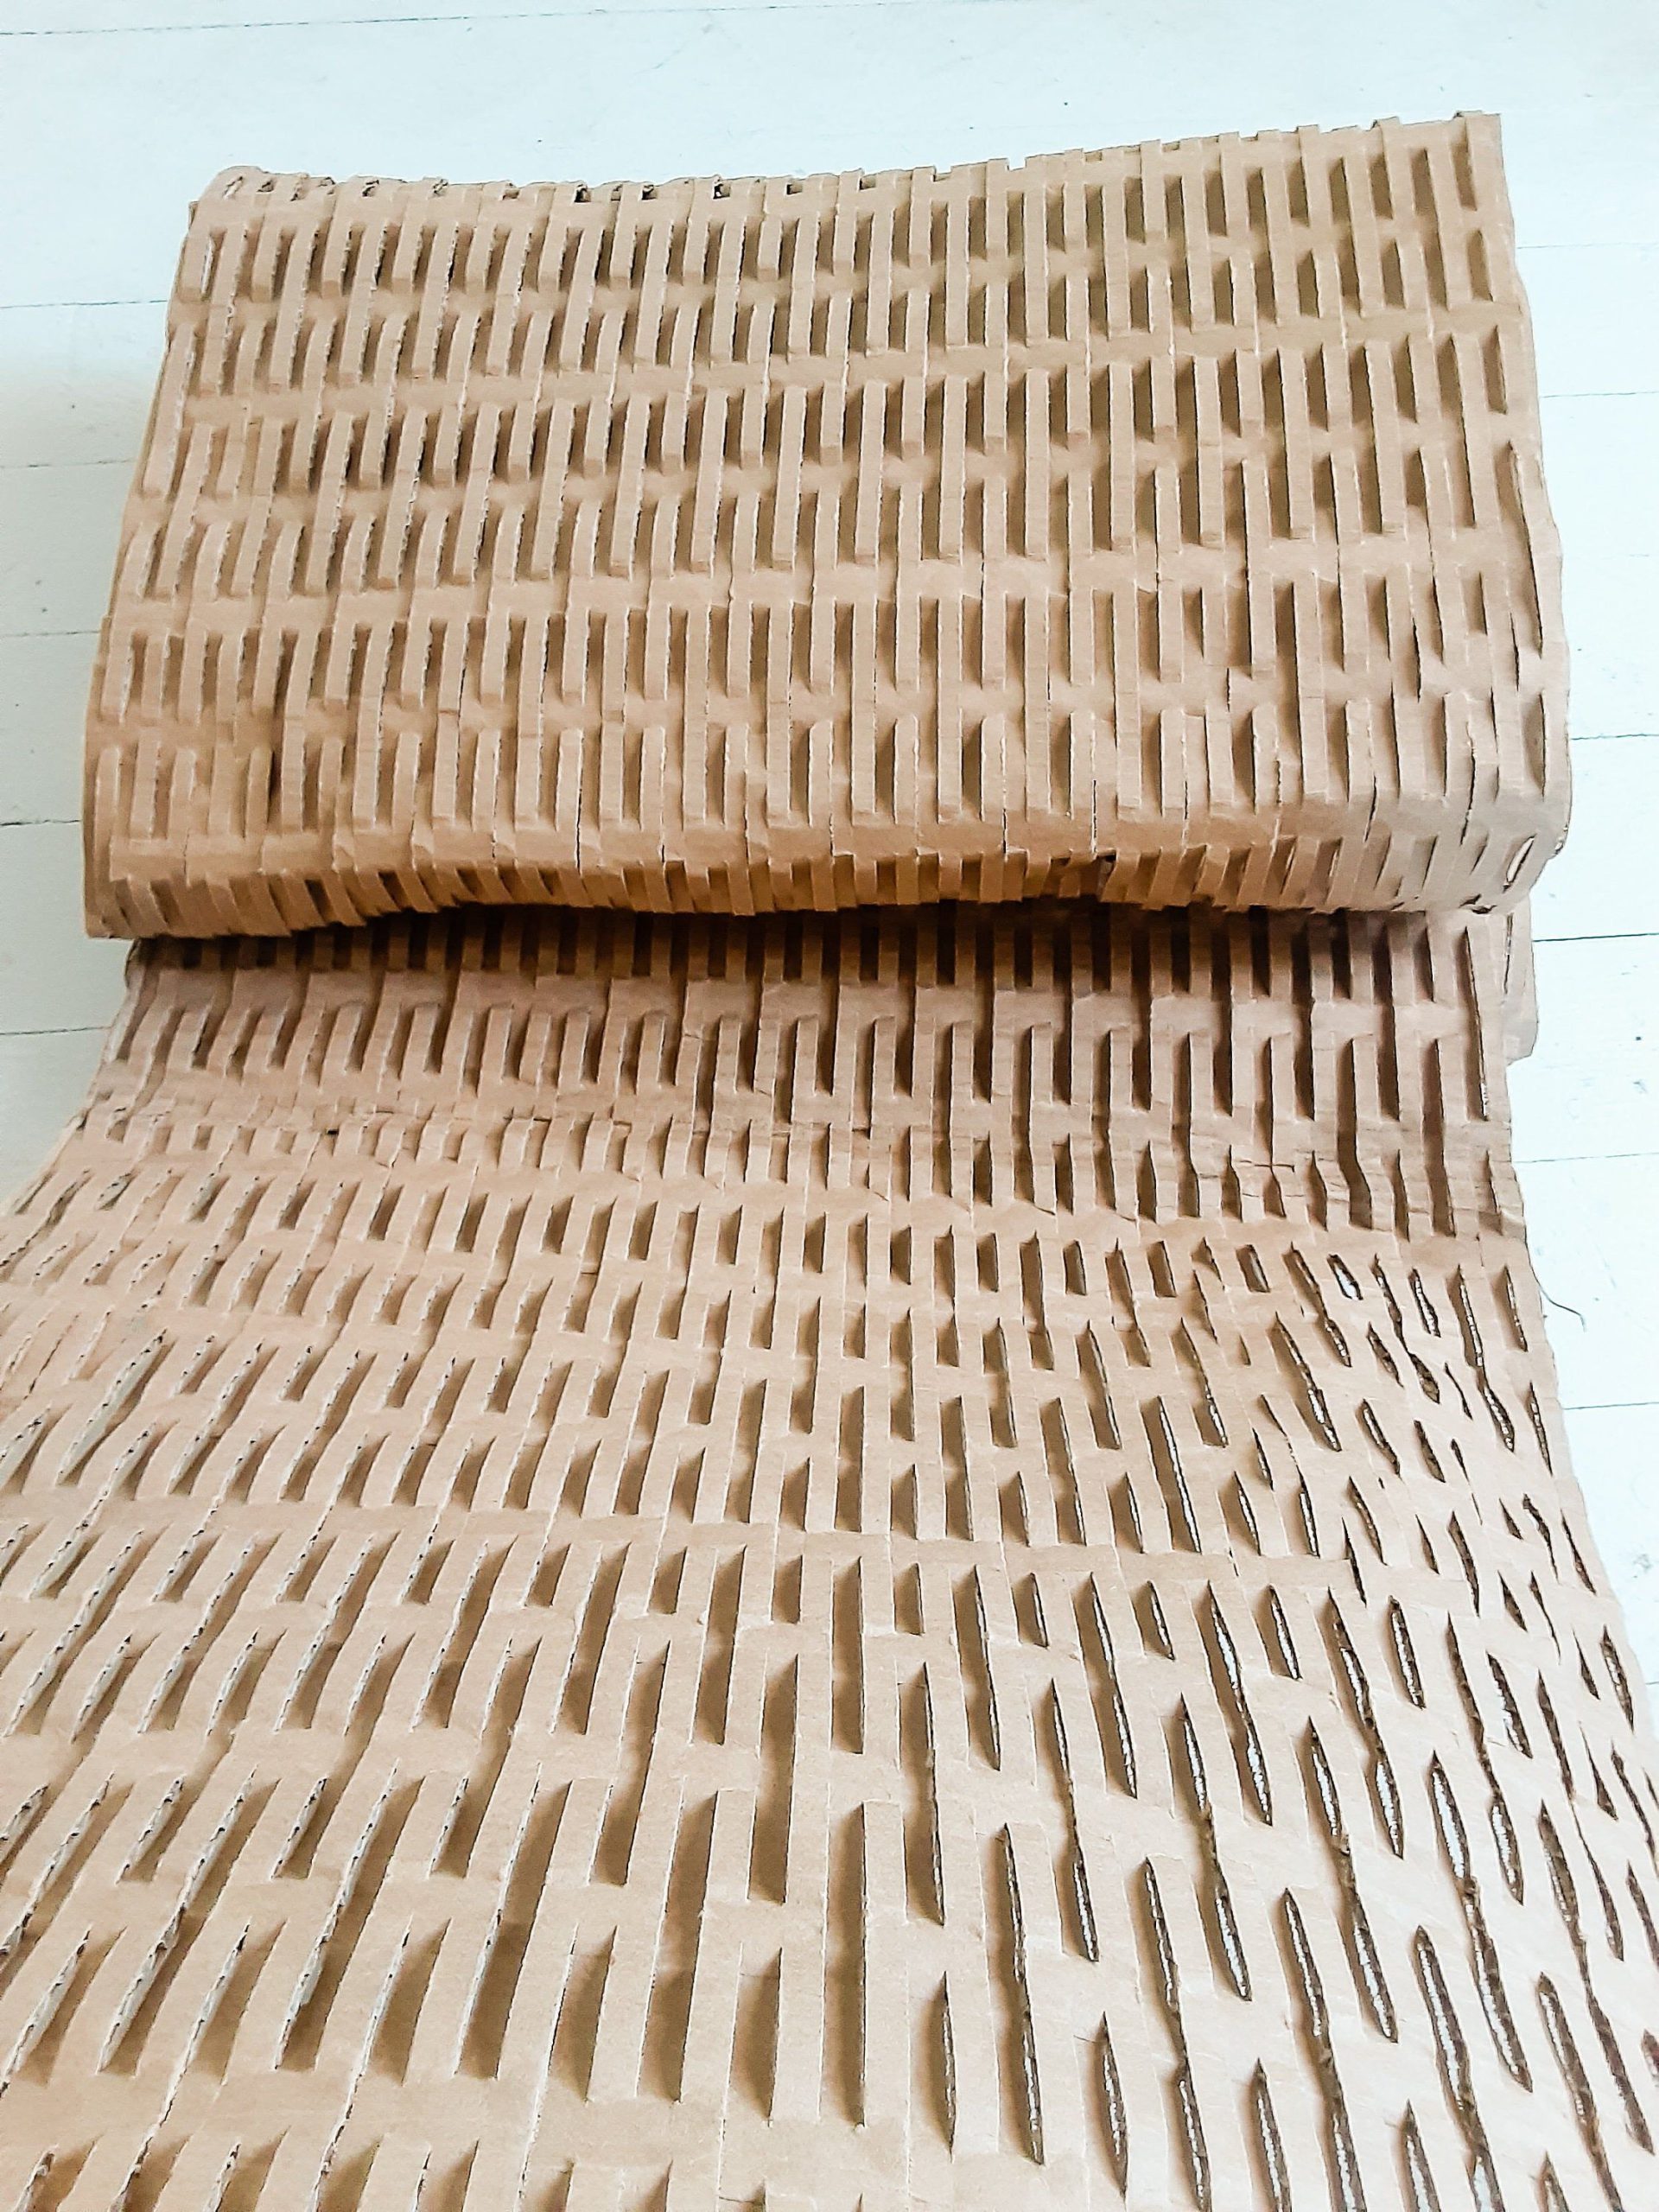 Shredded cardboard